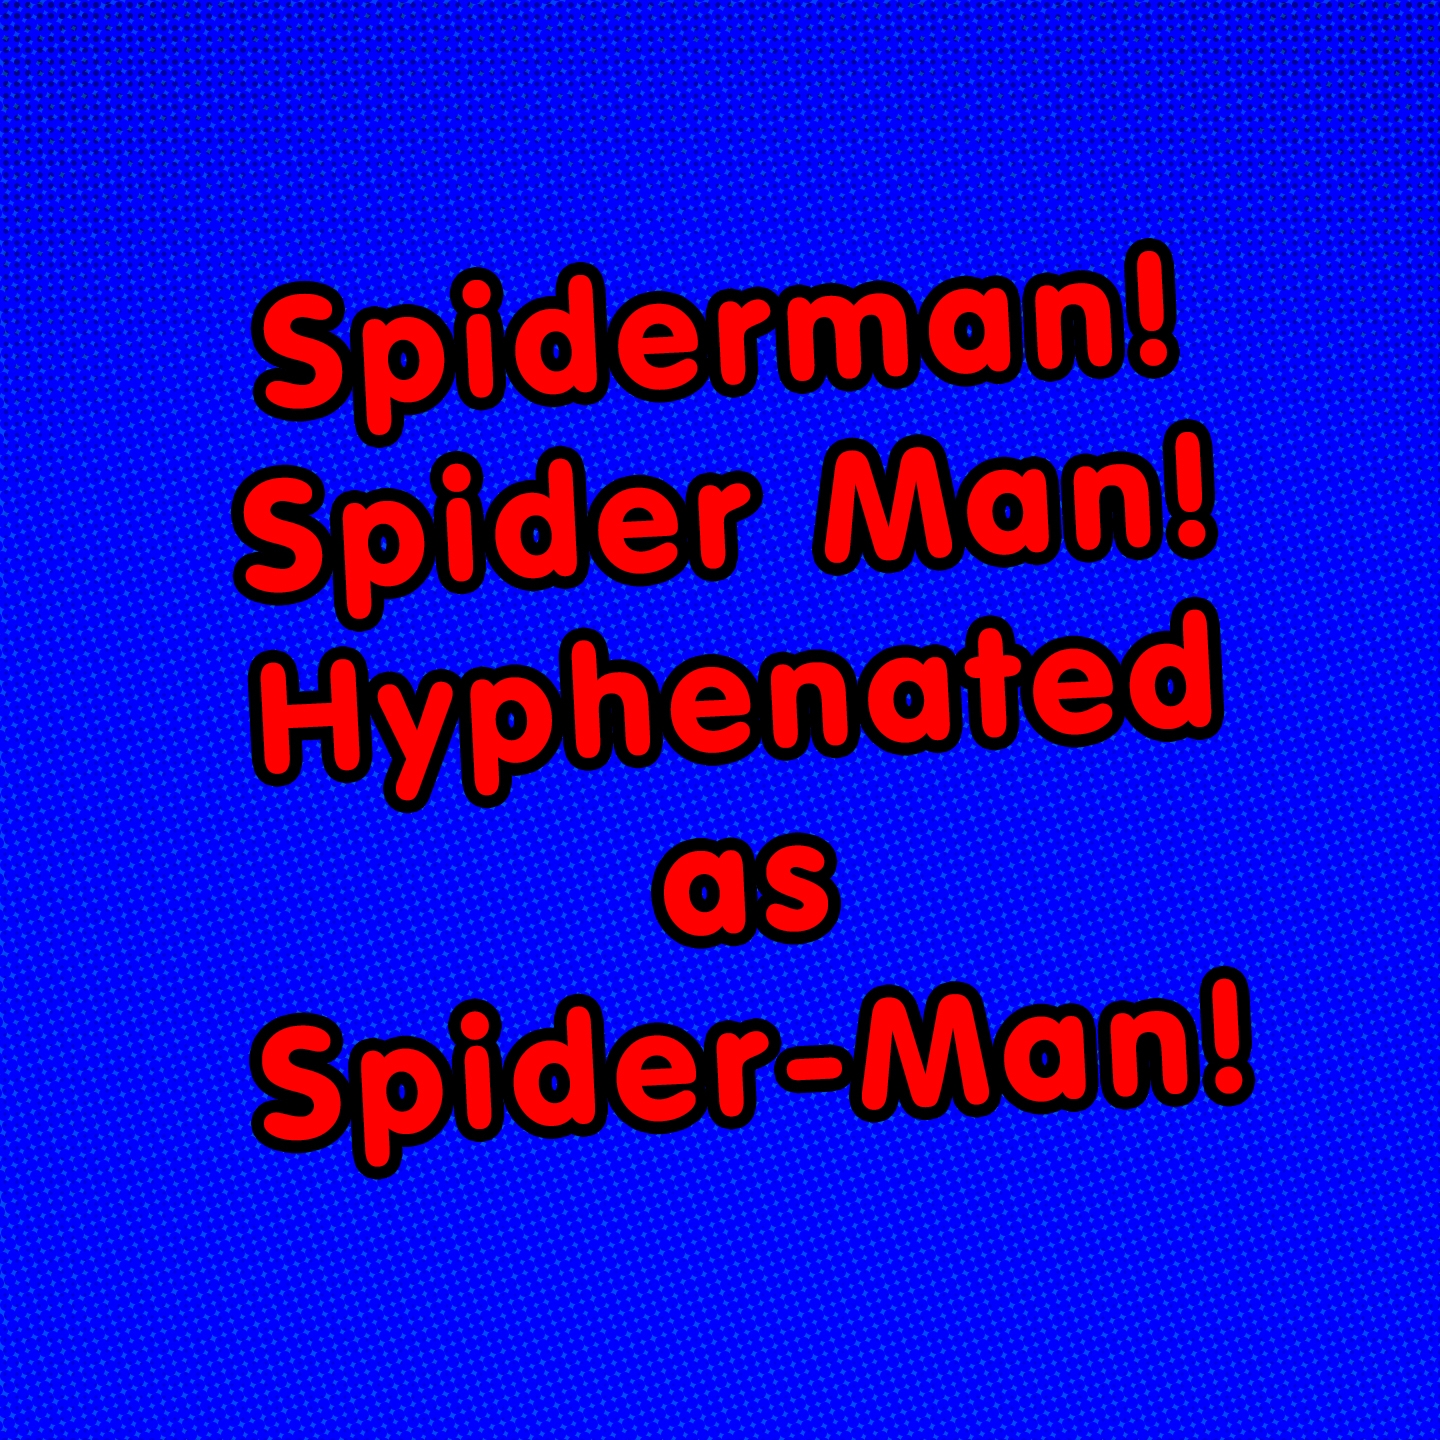 Spiderman! Spider Man! Hyphenated as Spider-Man!